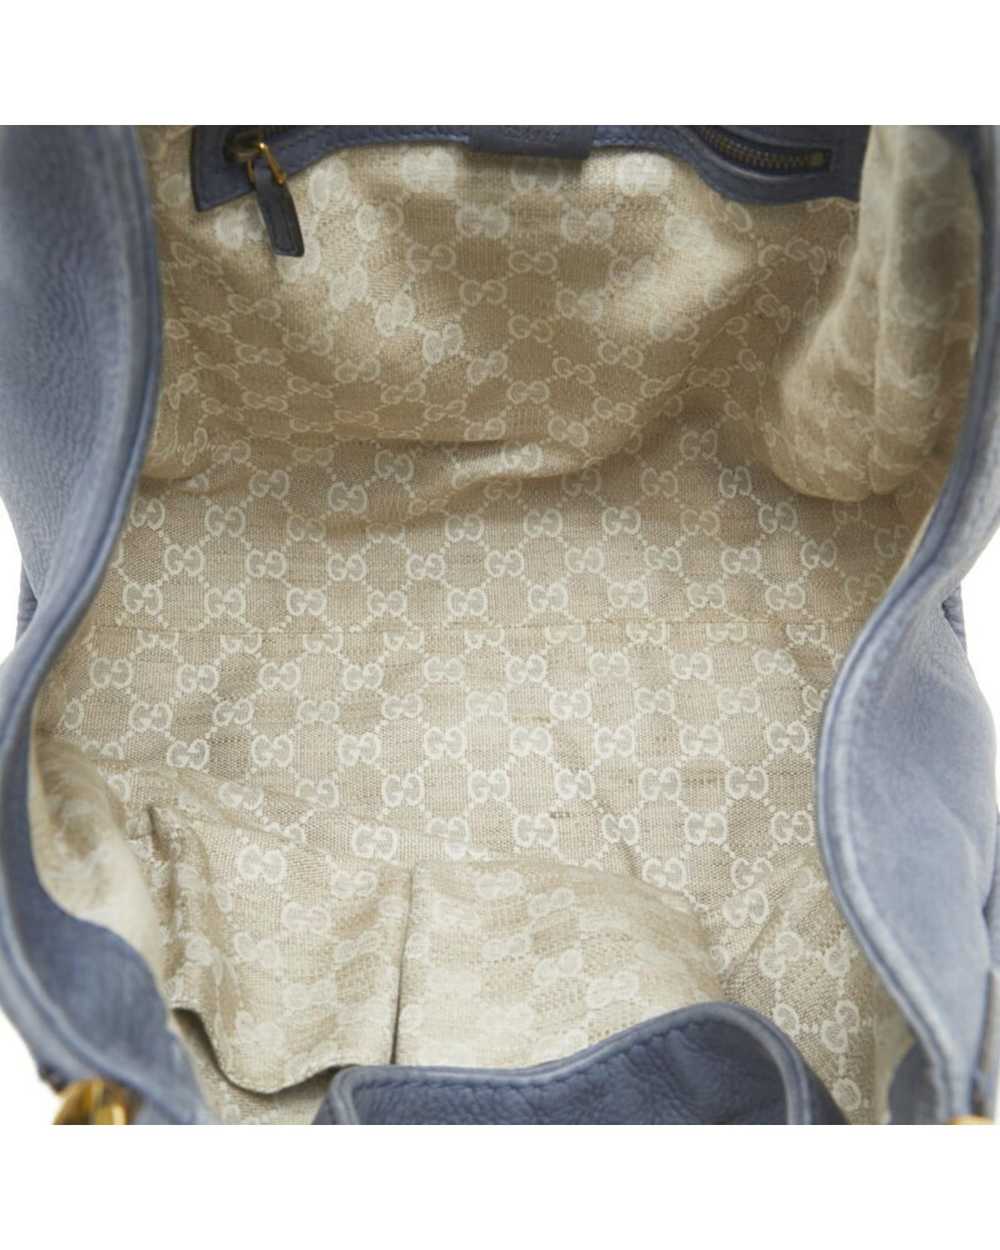 Gucci Luxury Soft Leather Shoulder Bag - image 6